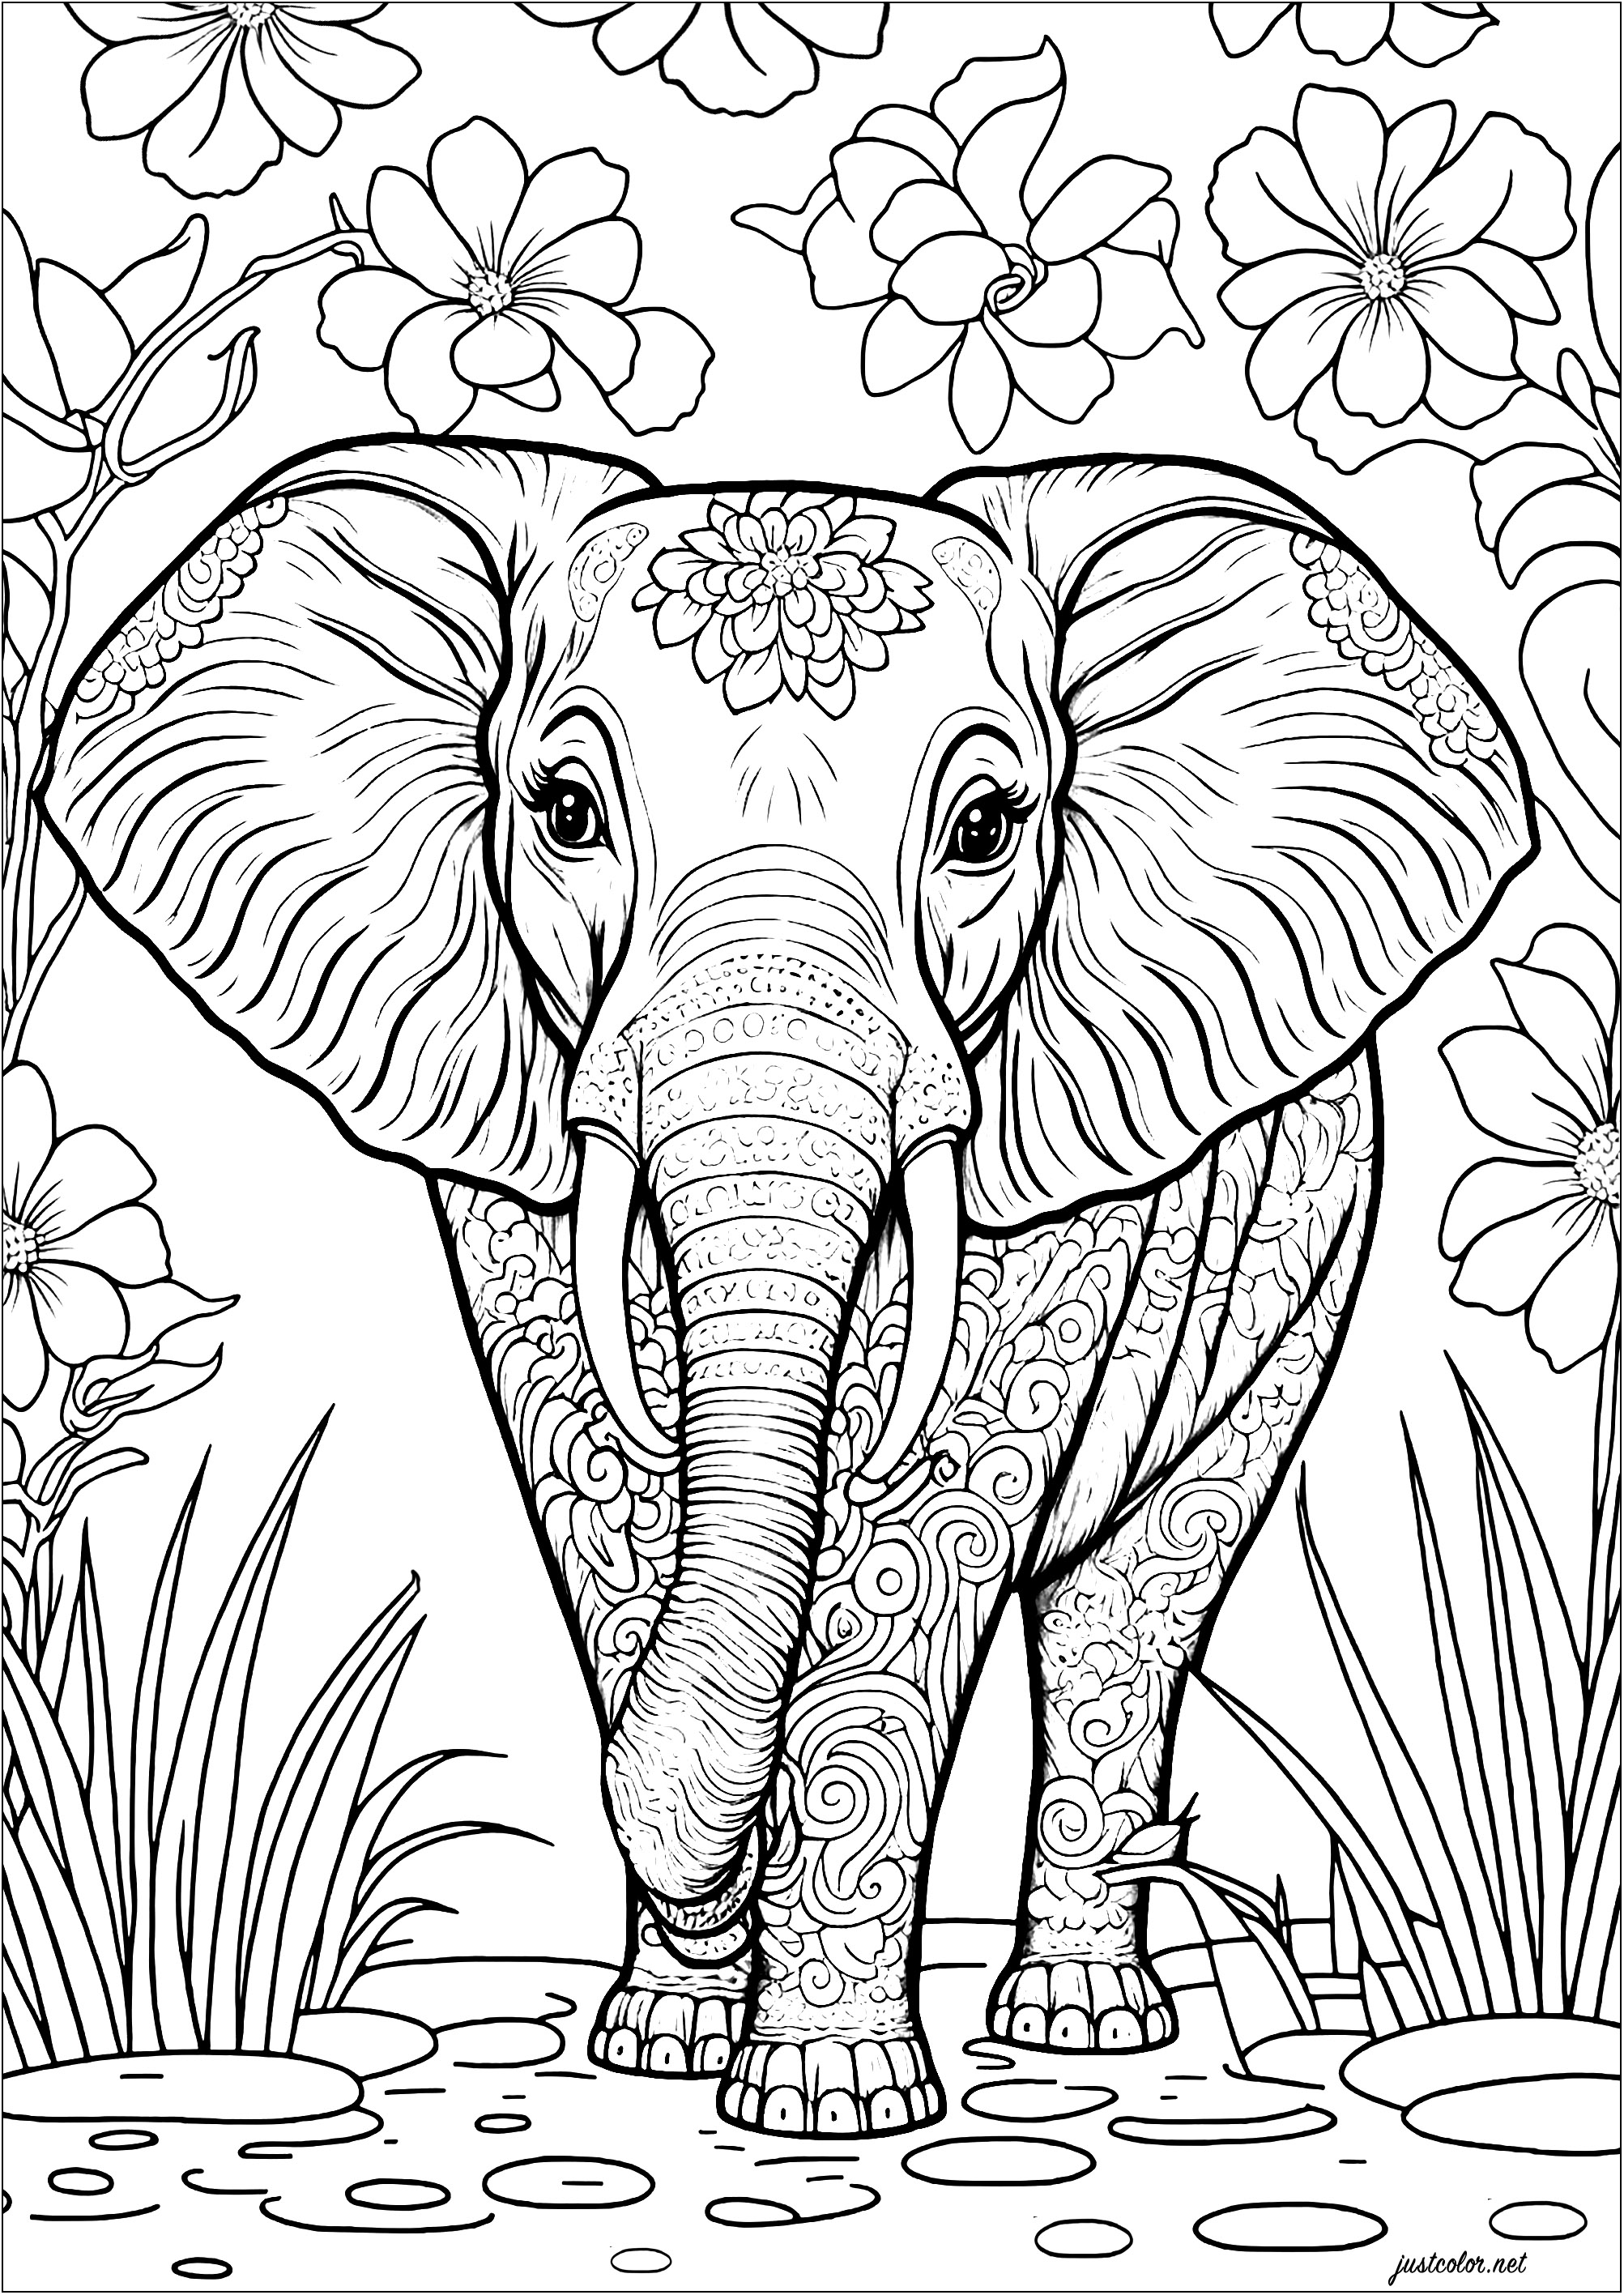 Niedliche Elefanten-Malvorlage mit verschiedenen Ausmalmotiven. Der Körper des Elefanten ist mit Spiralen, Streifen und Punkten verziert, und seine Ohren sind mit geometrischen Formen und anderen Mustern gefüllt. Färben Sie auch die hübschen Blumen und die Vegetation im Hintergrund.